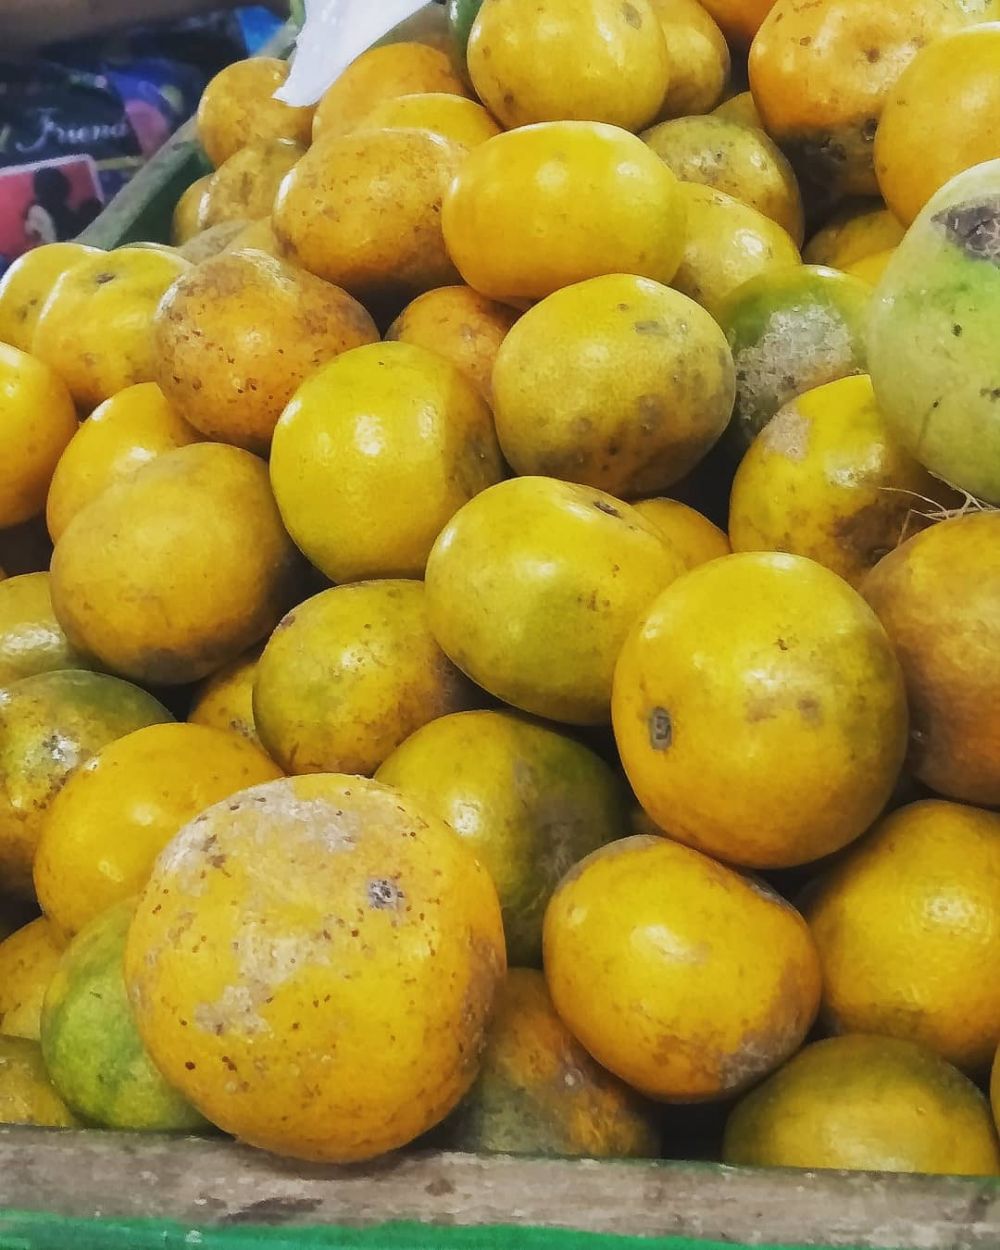 Benarkah jeruk bermanfaat untuk kesehatan mata?